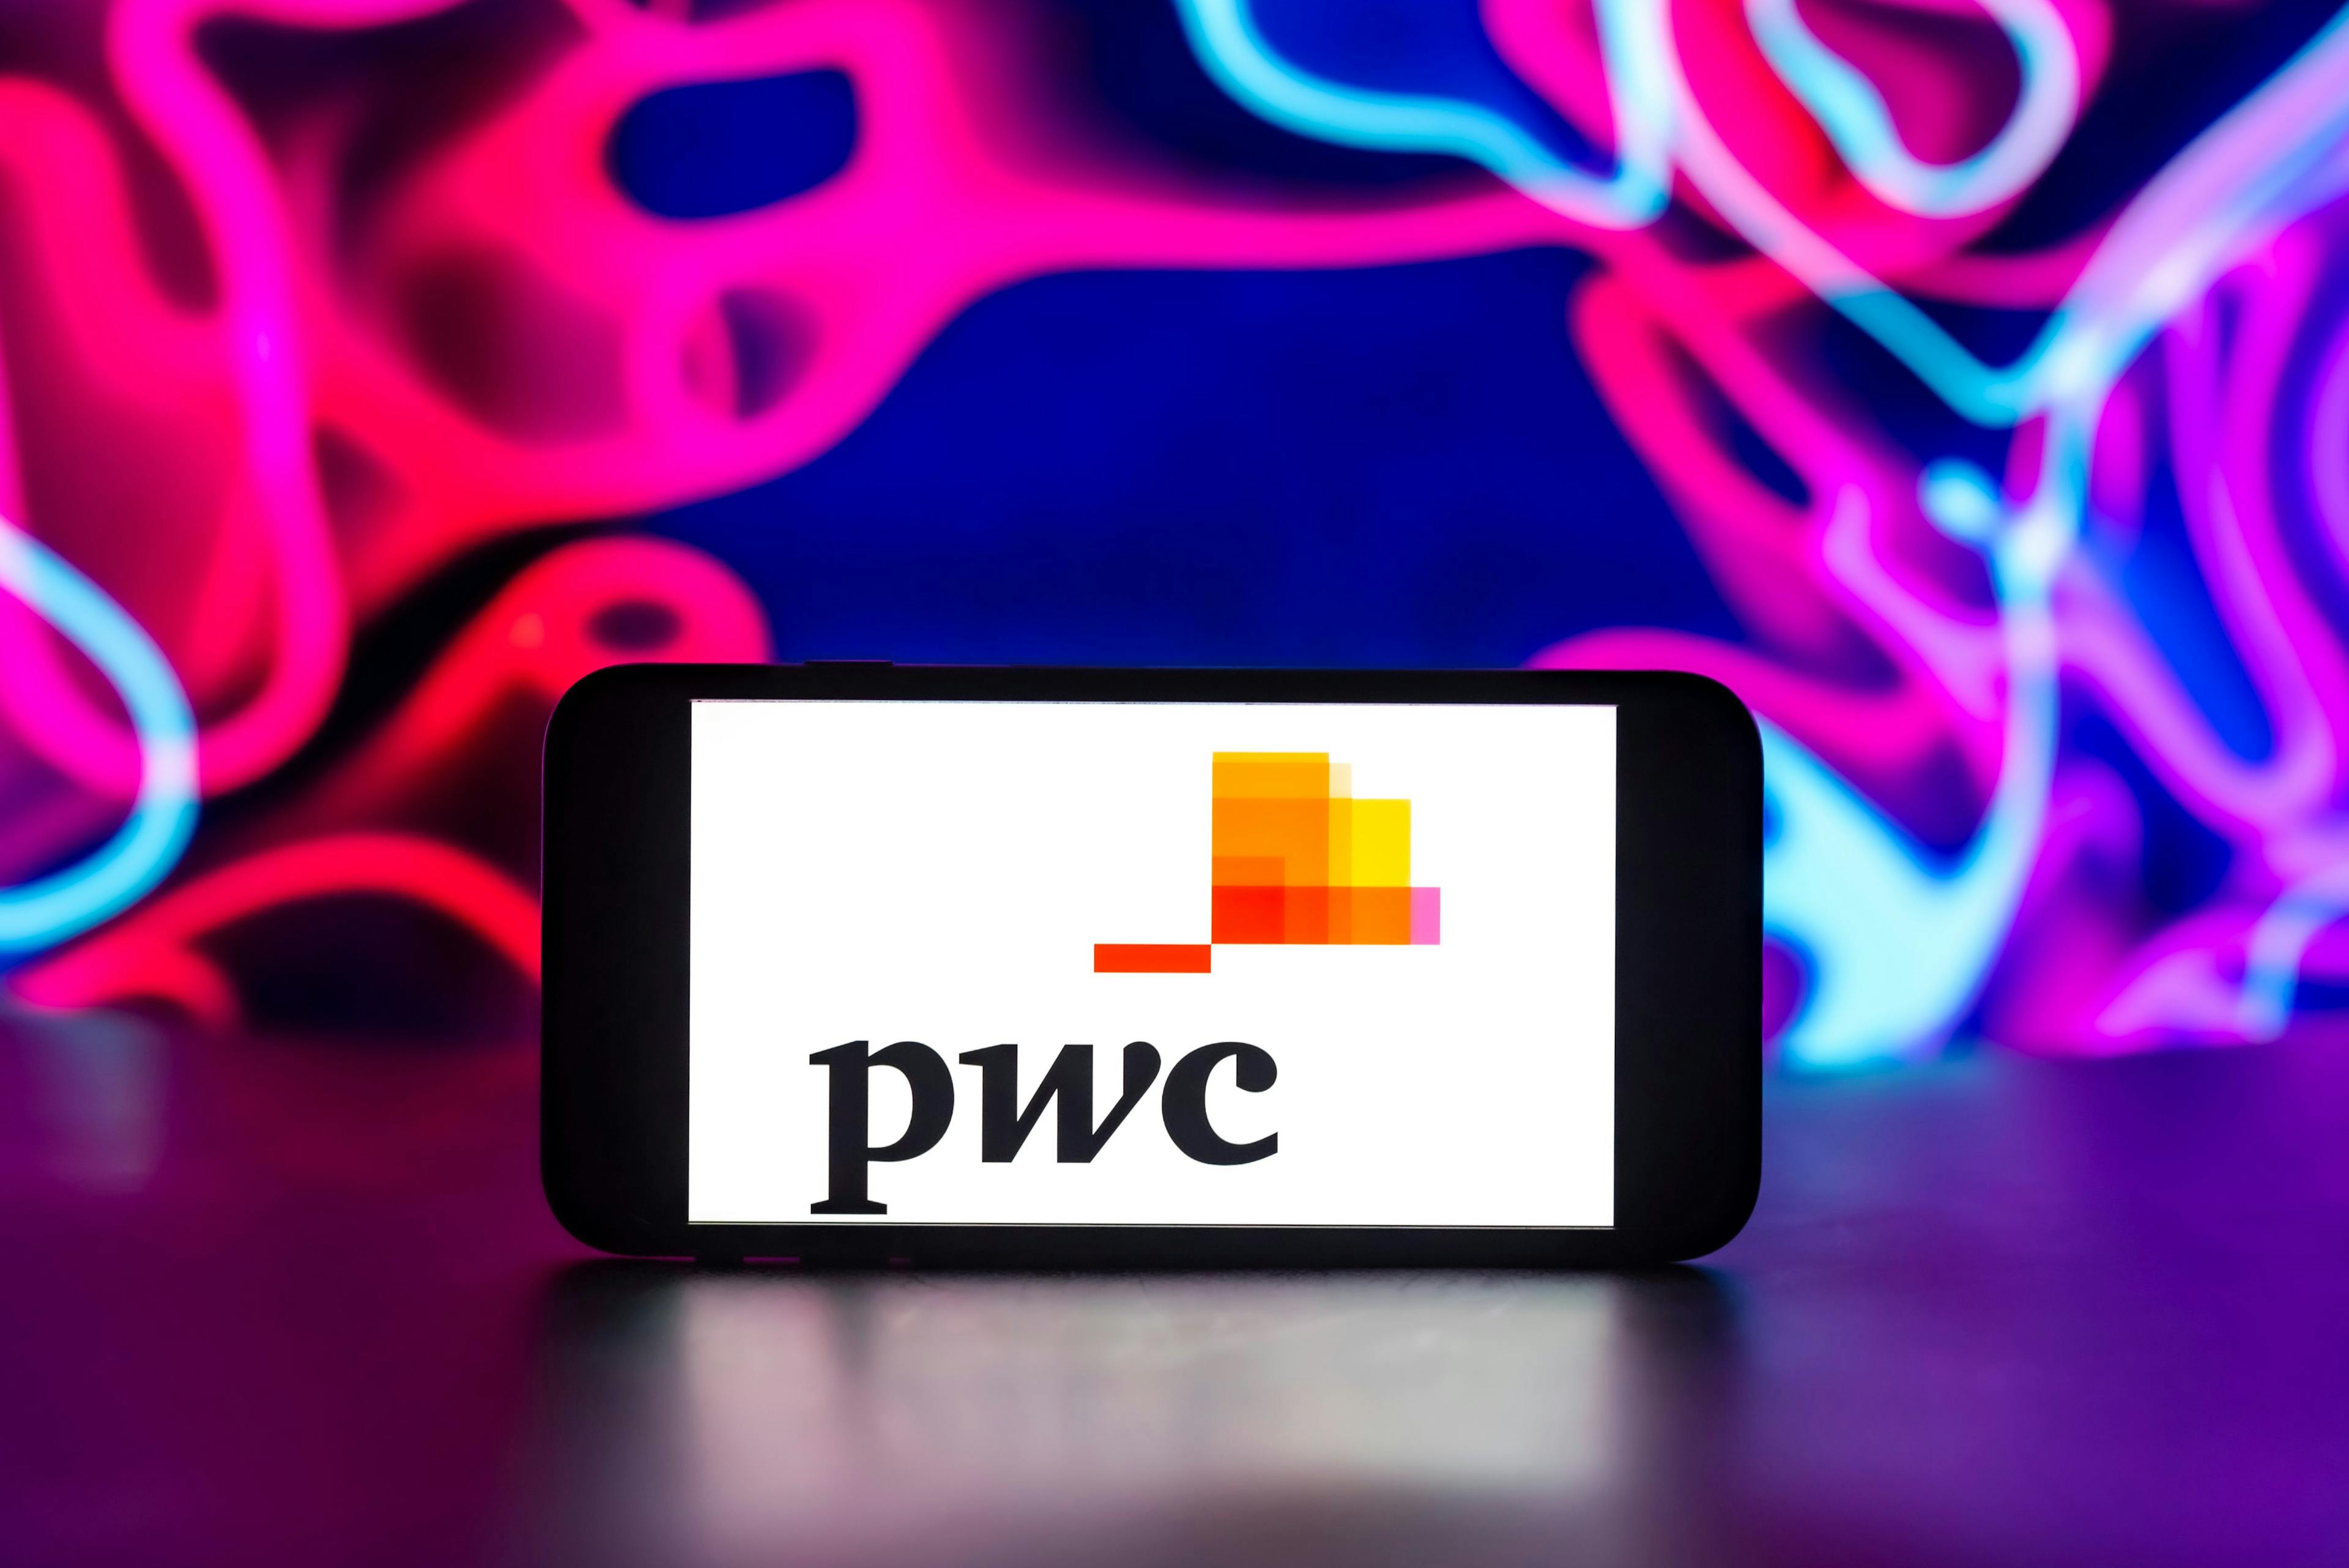 PwC logo displayed on a screen